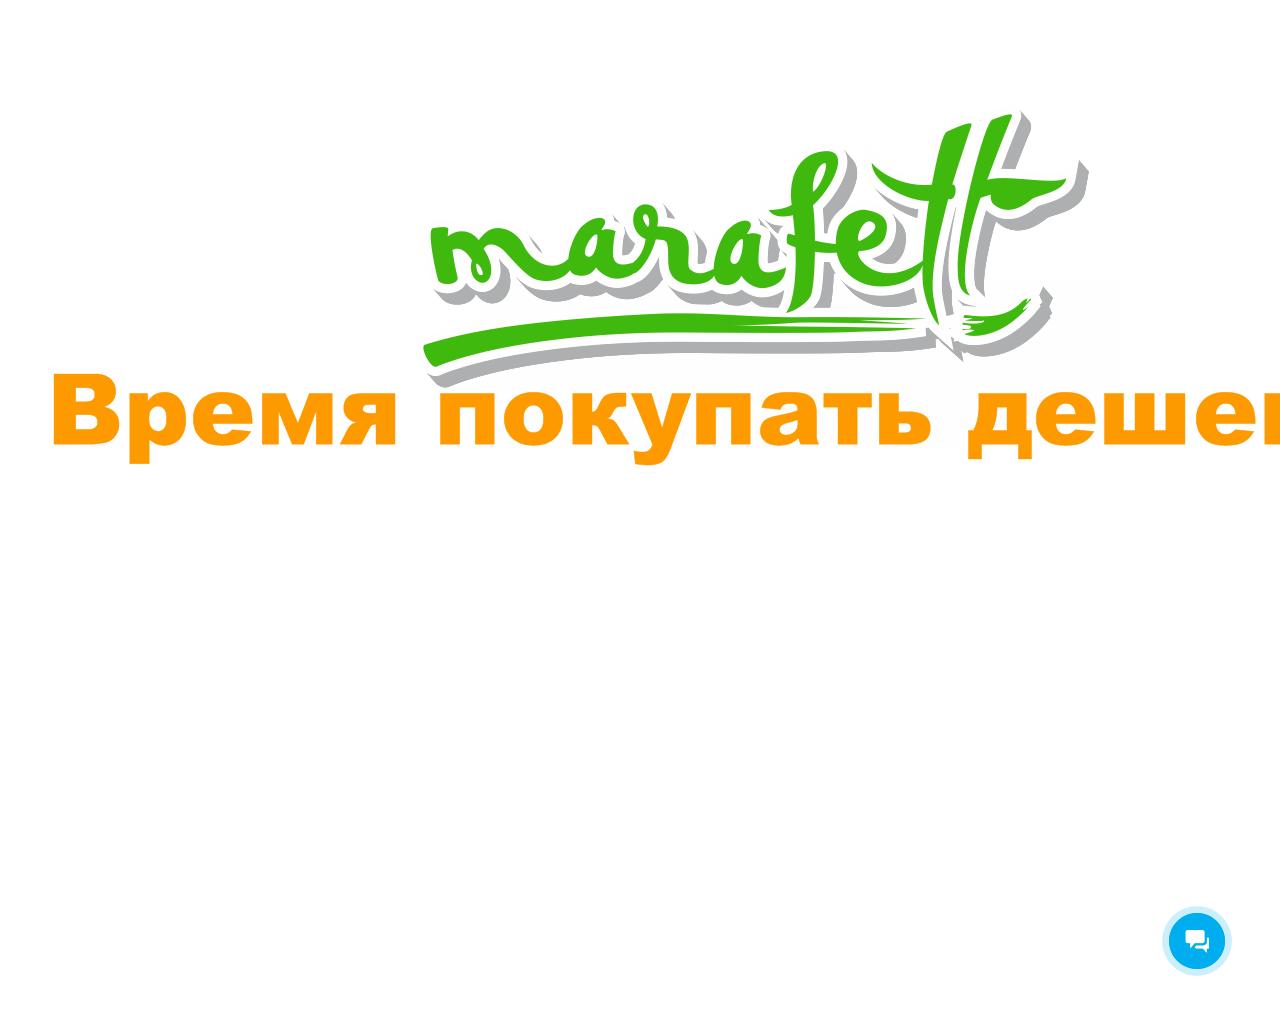 Изображение сайта marafett.su в разрешении 1280x1024